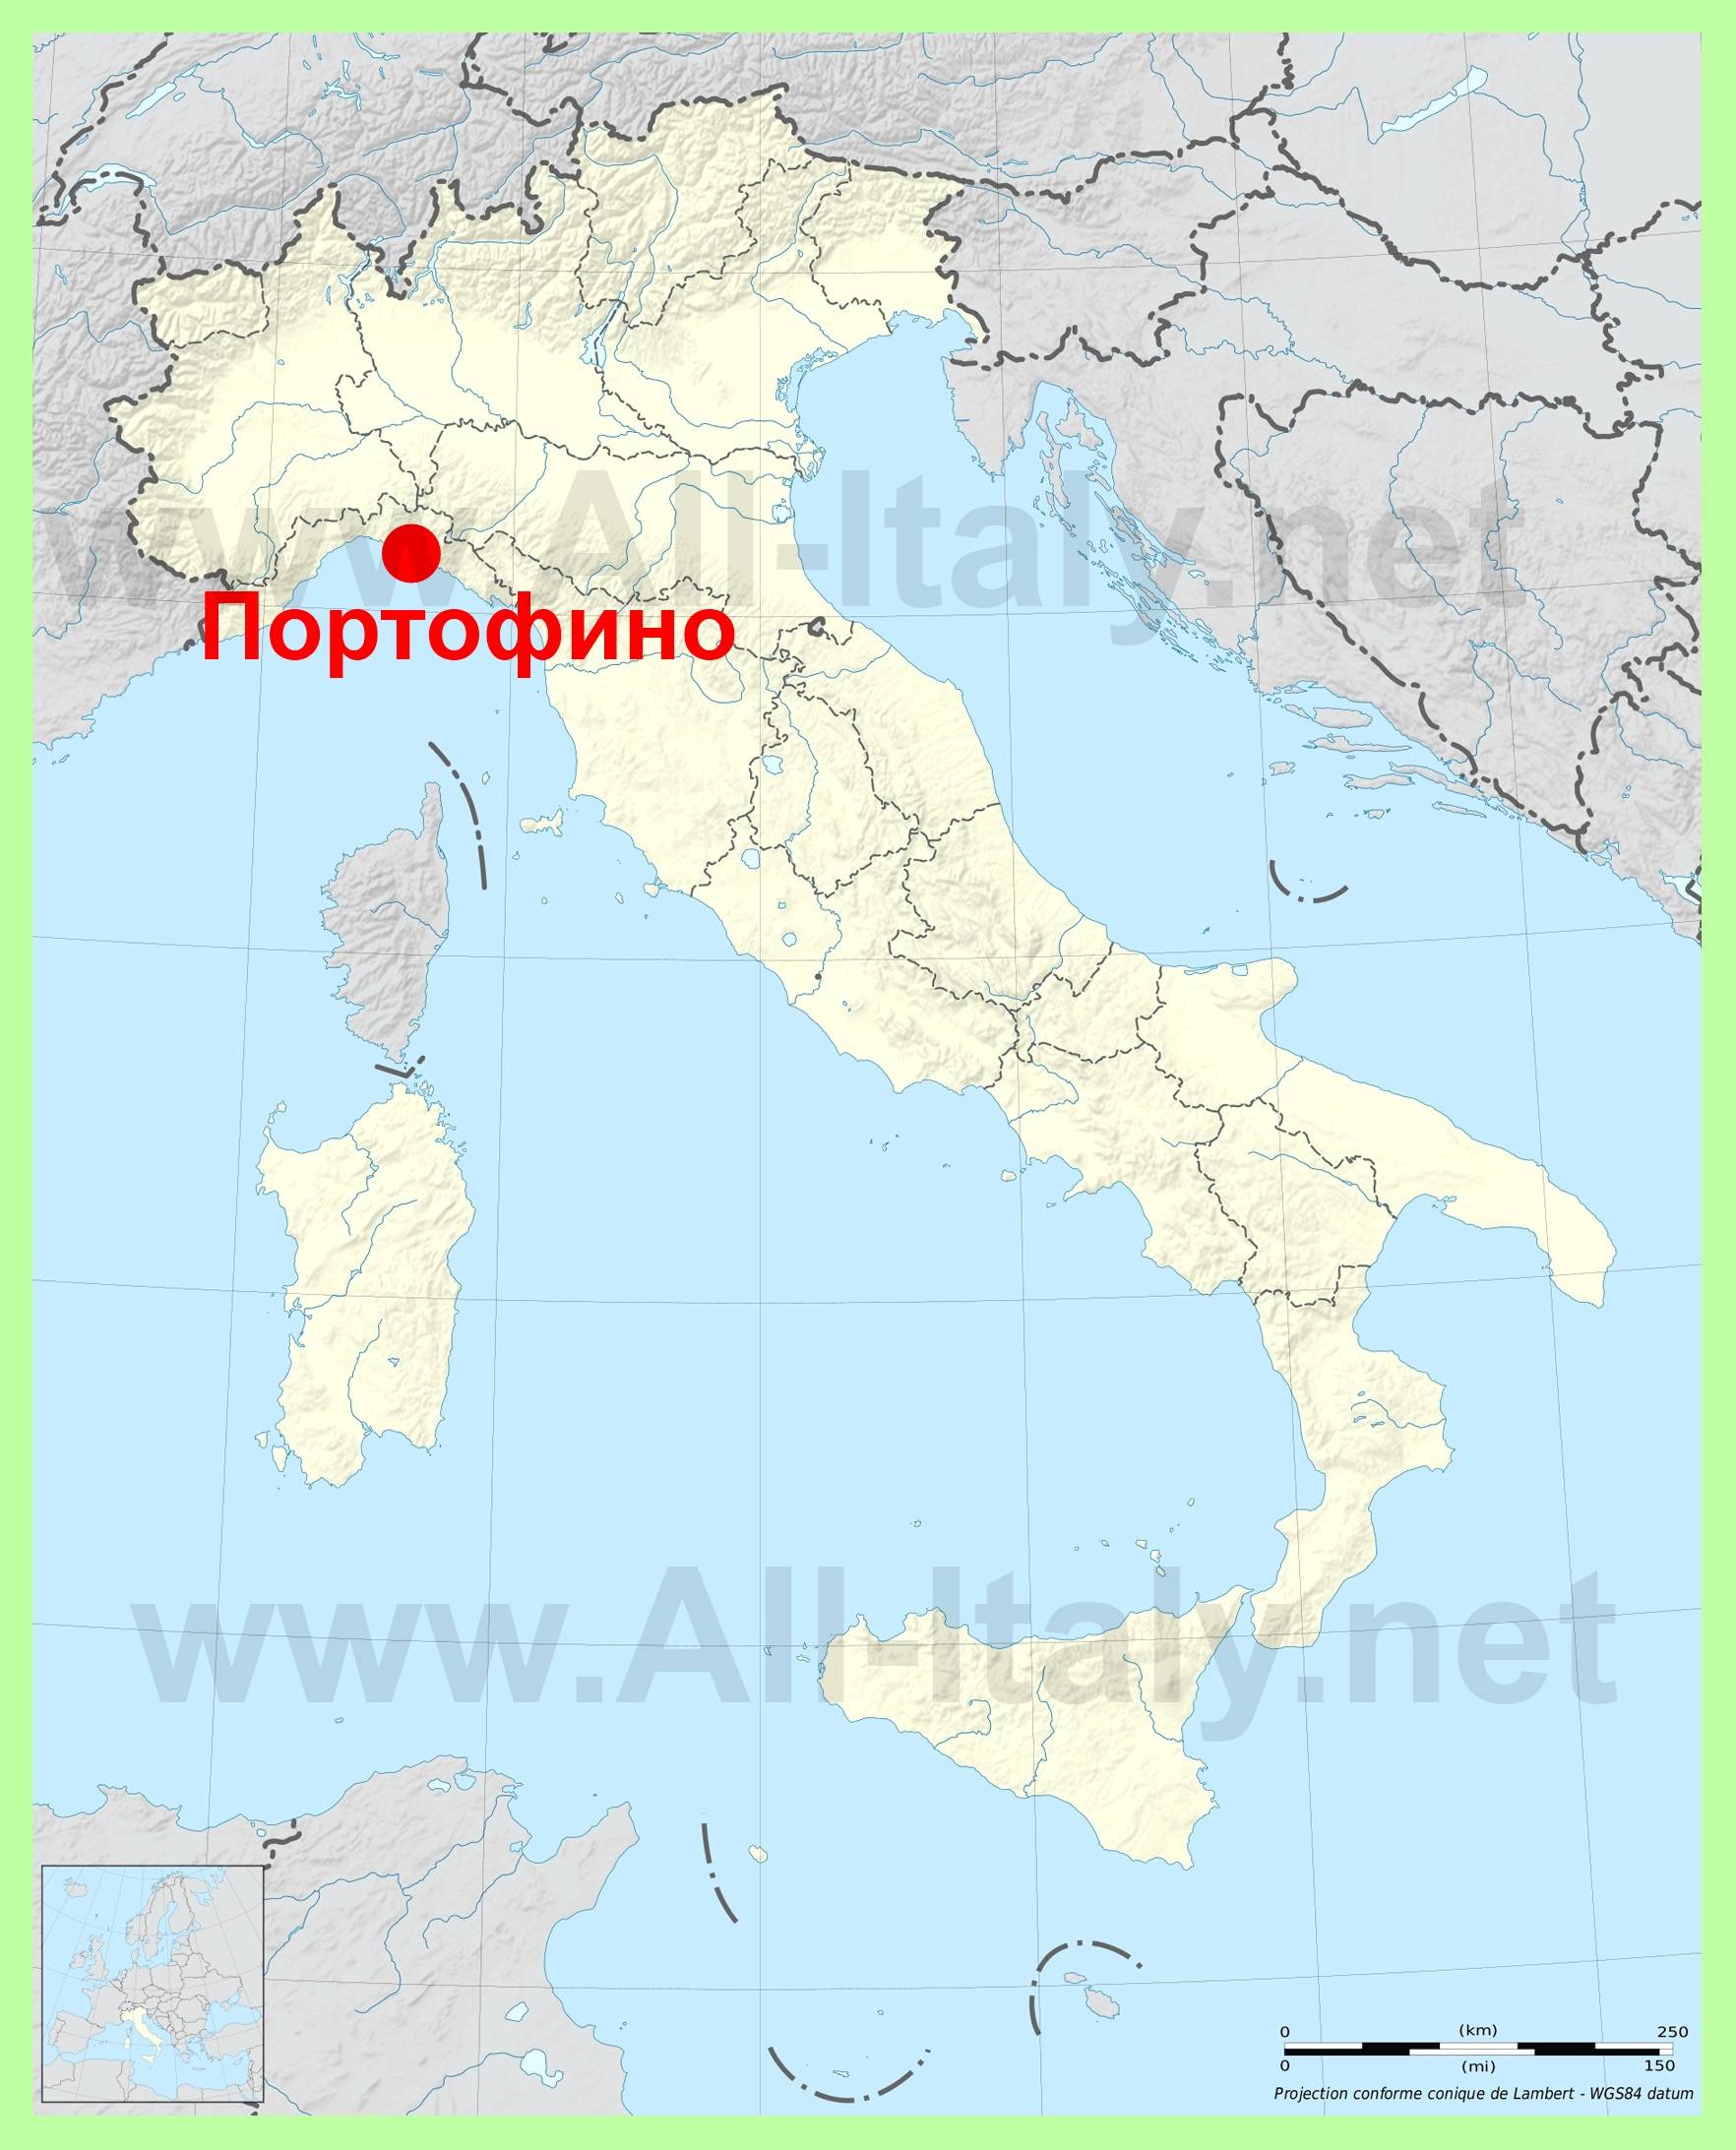 Достопримечательности портофино (италия): фото, описание, карта с адресами